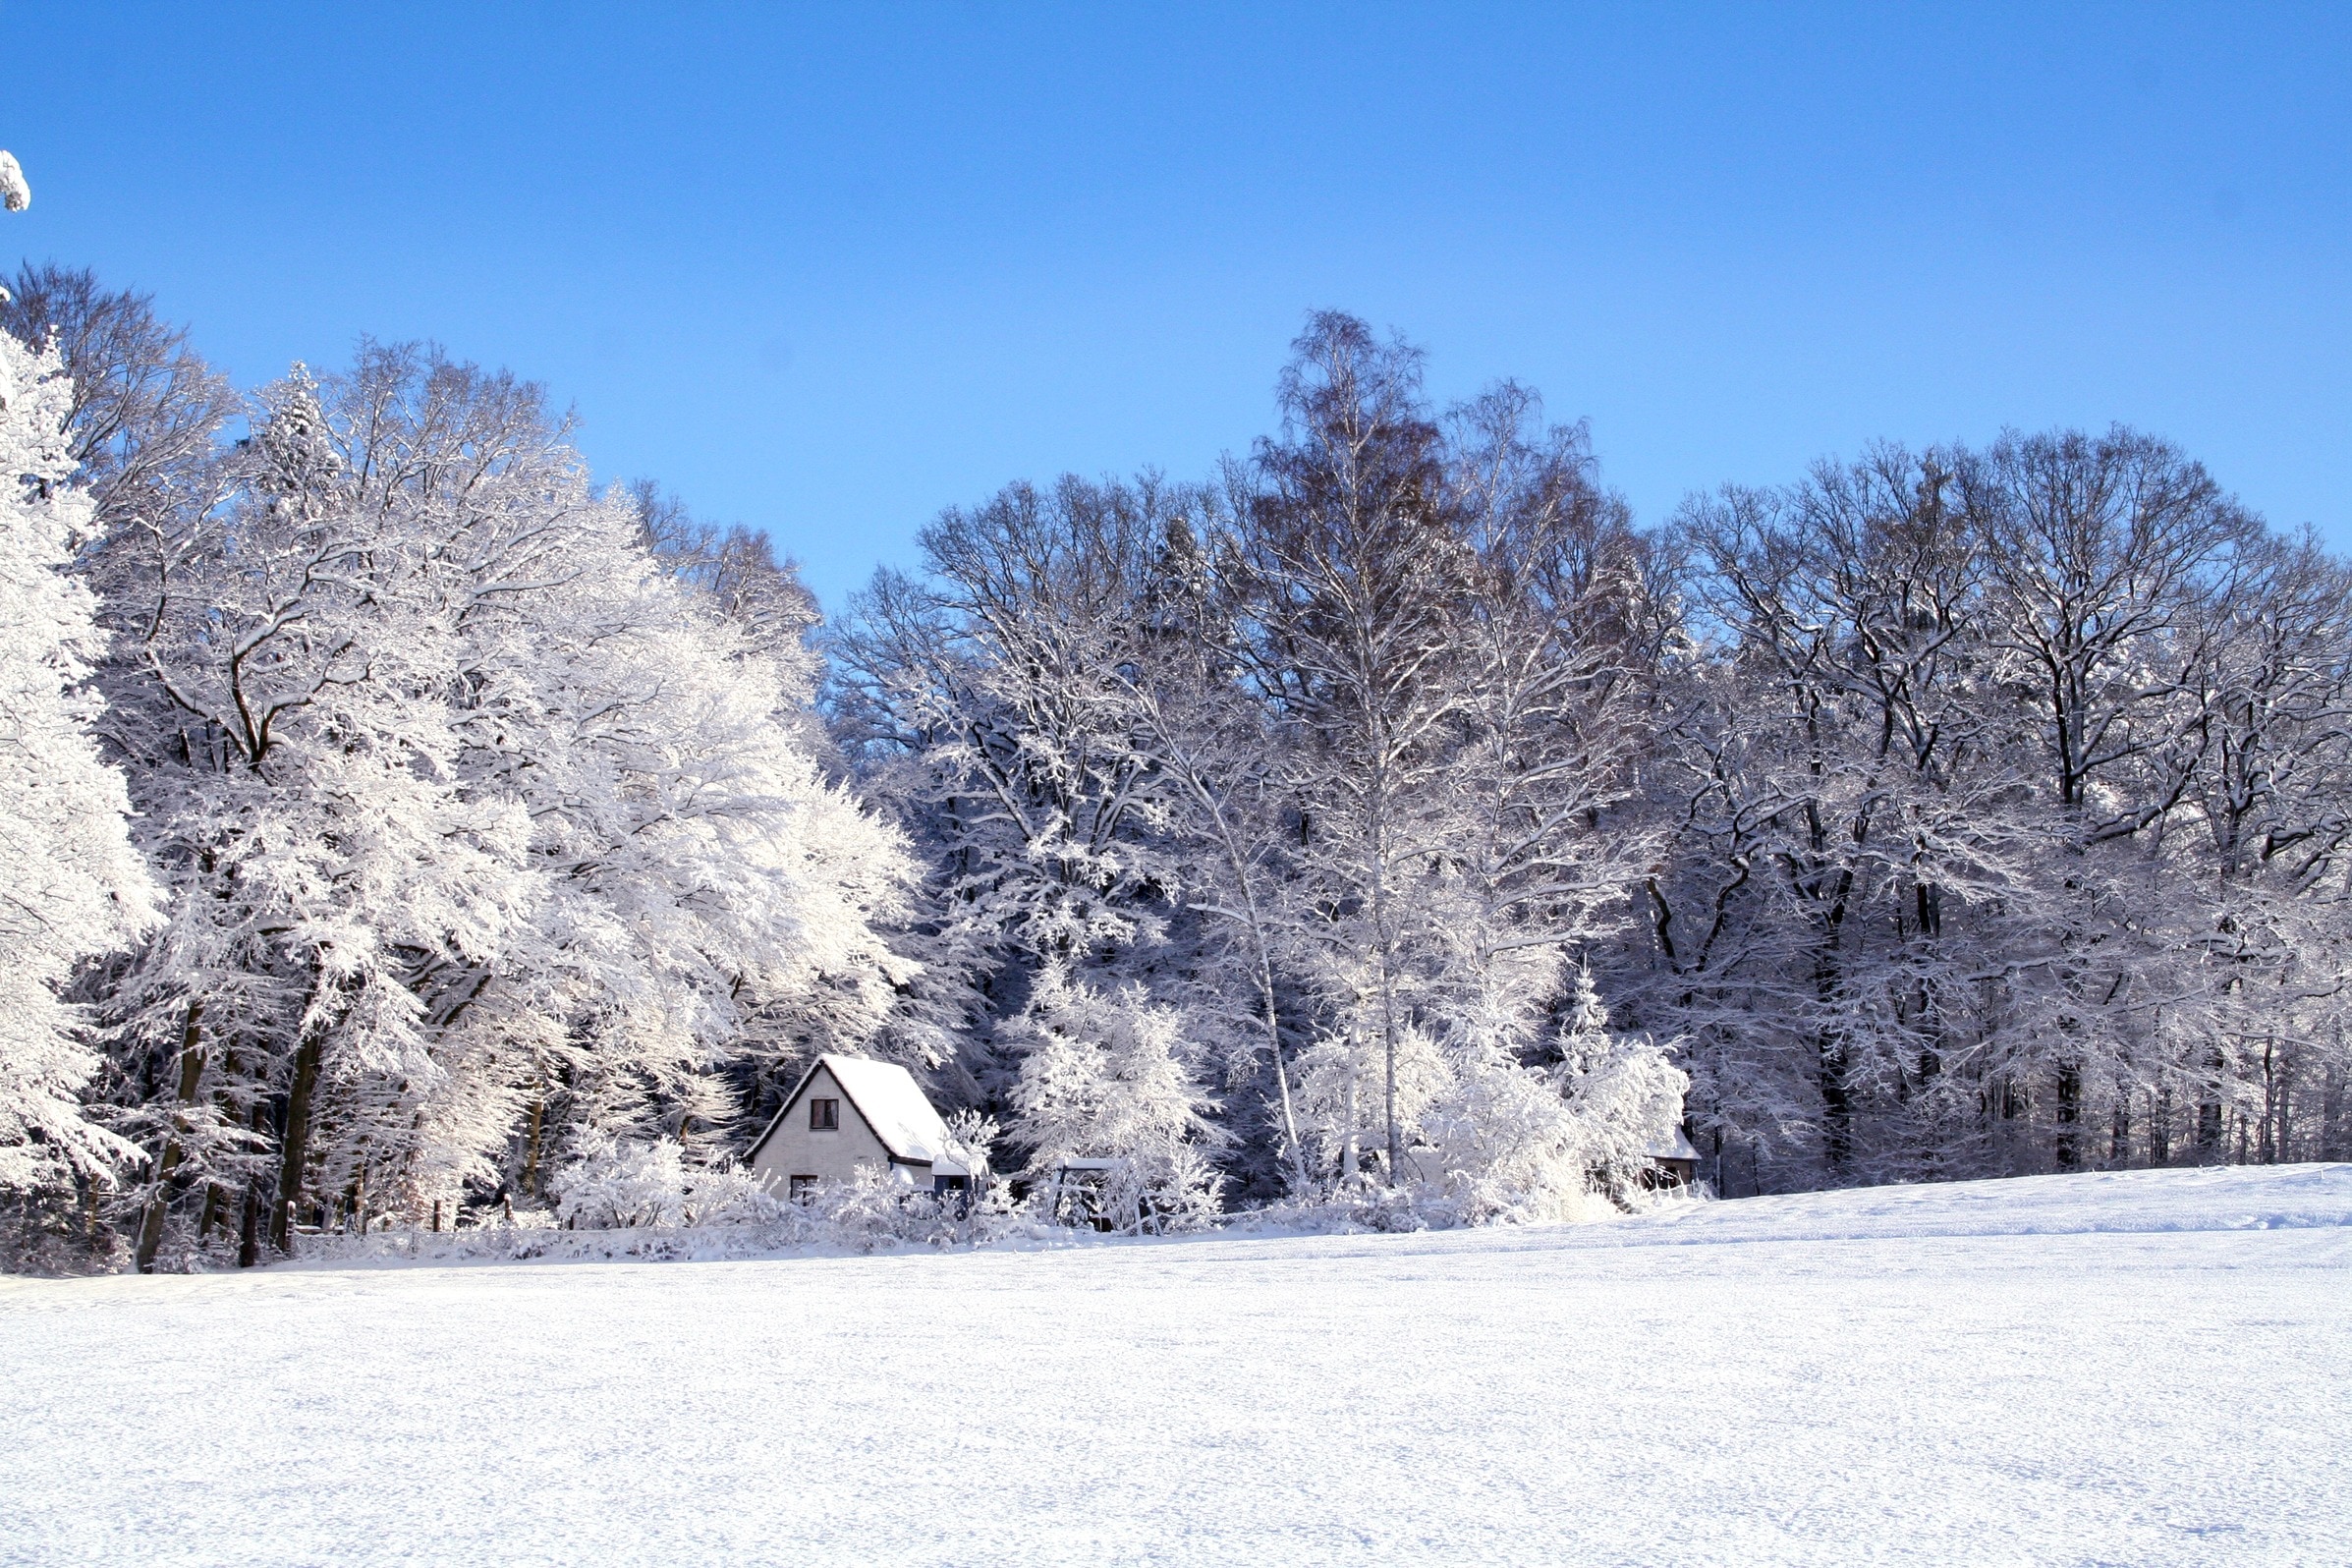 Landscape, Wintry, Snow, Cold, Winter, cold temperature, winter